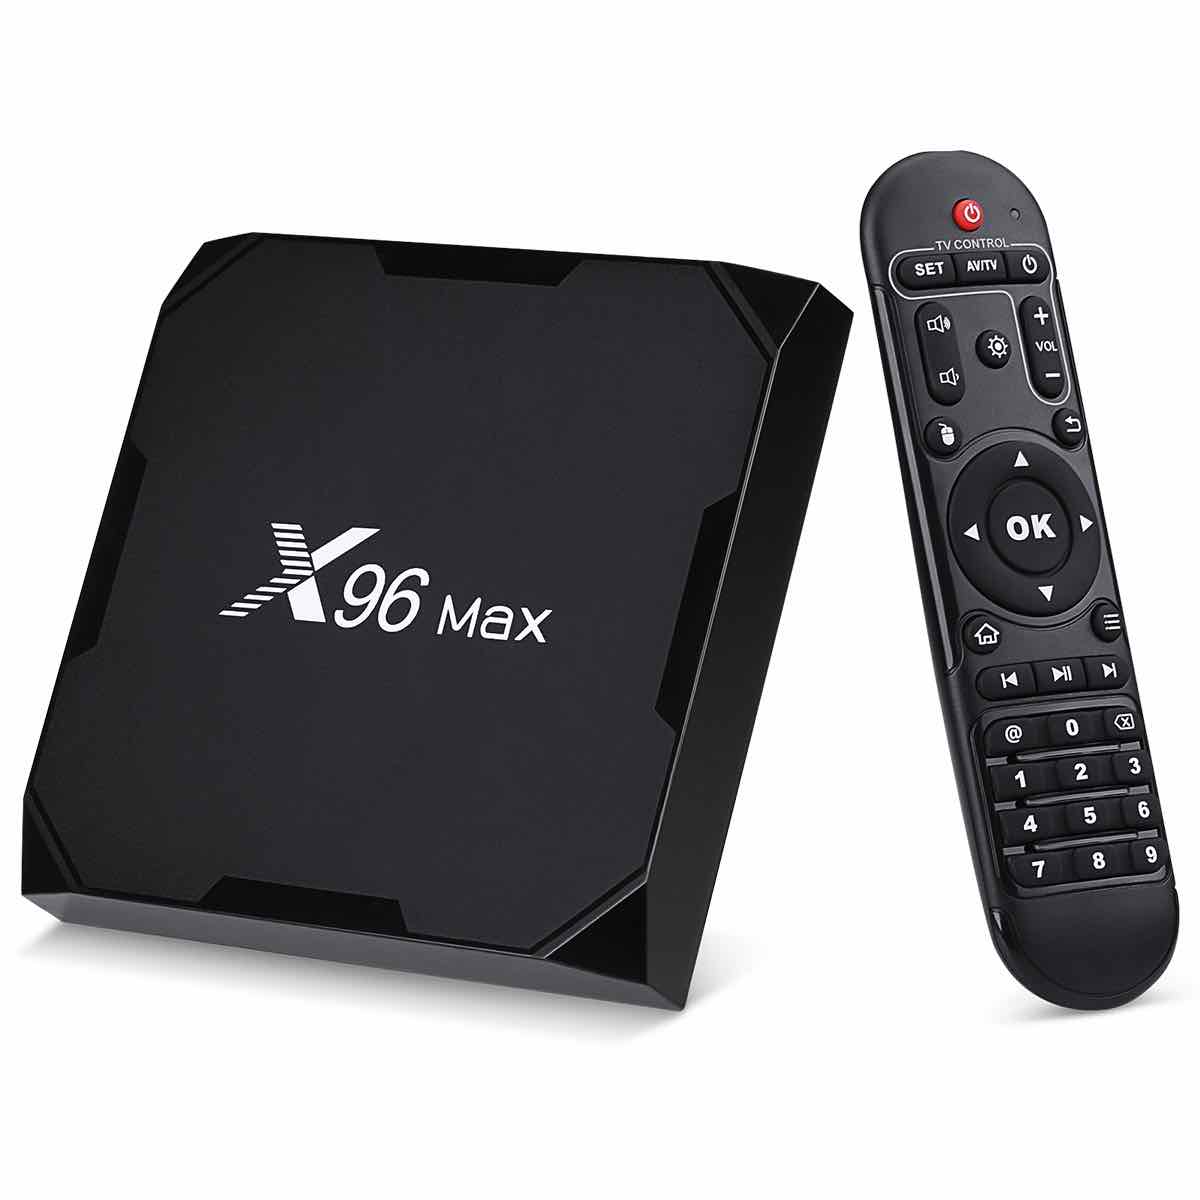 Приставки smart тв купить. Smart TV Box x96 Max. Смарт приставка x96 Max Plus. Смарт приставка x96max+4/32gb. Android приставка x96 Max.